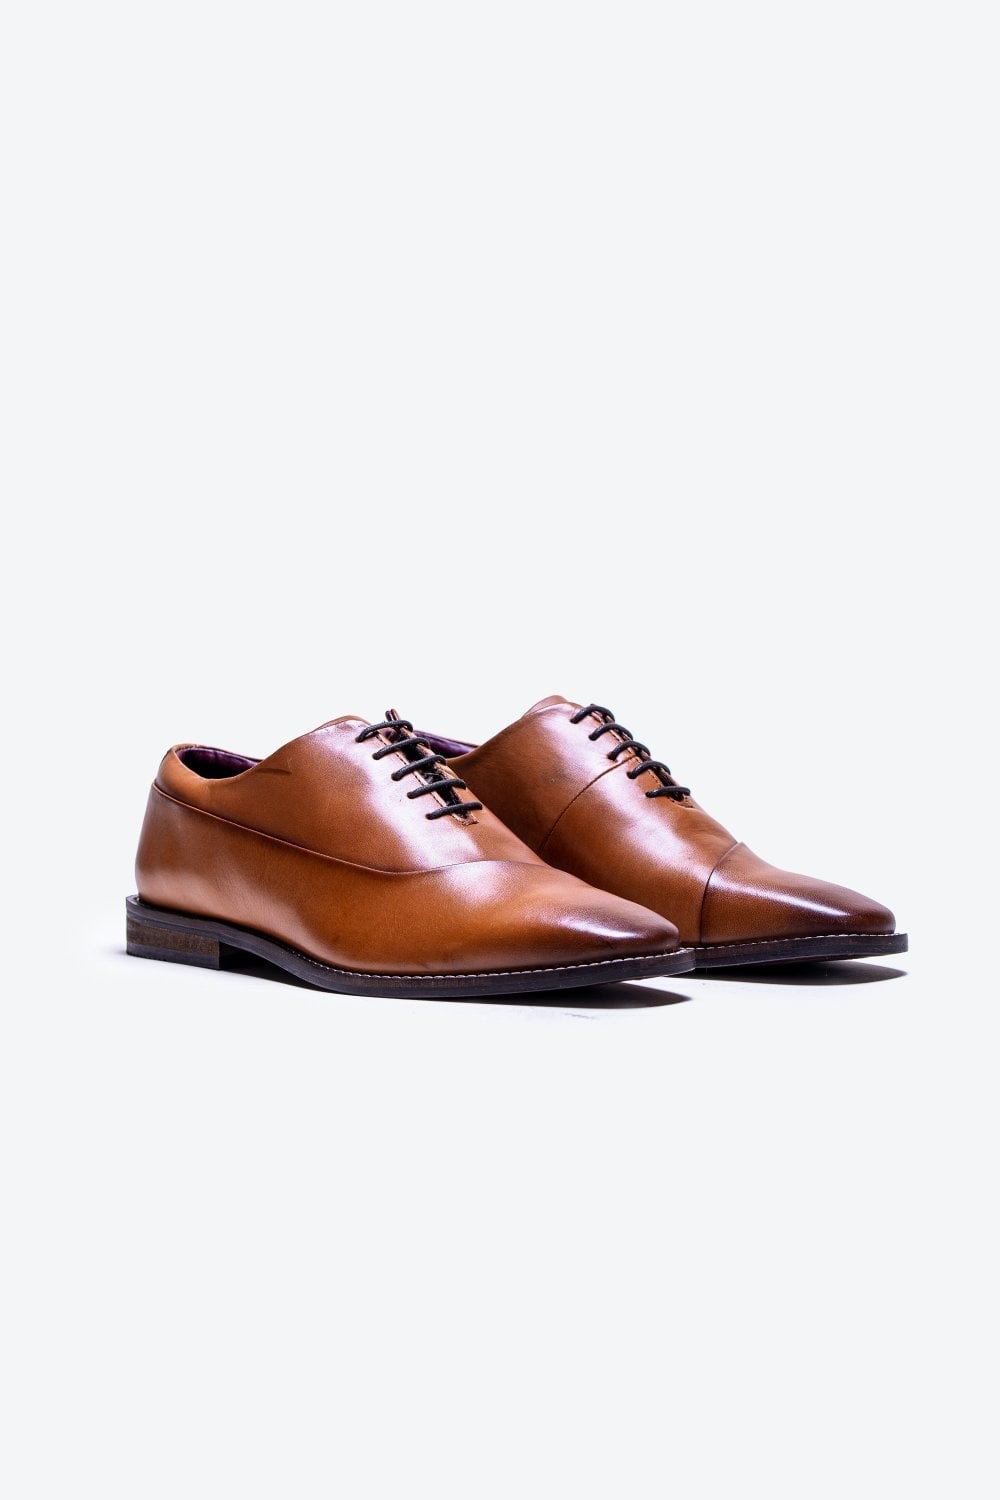 Chaussures Oxford en cuir véritable pour hommes - SEVILLE - bronzer